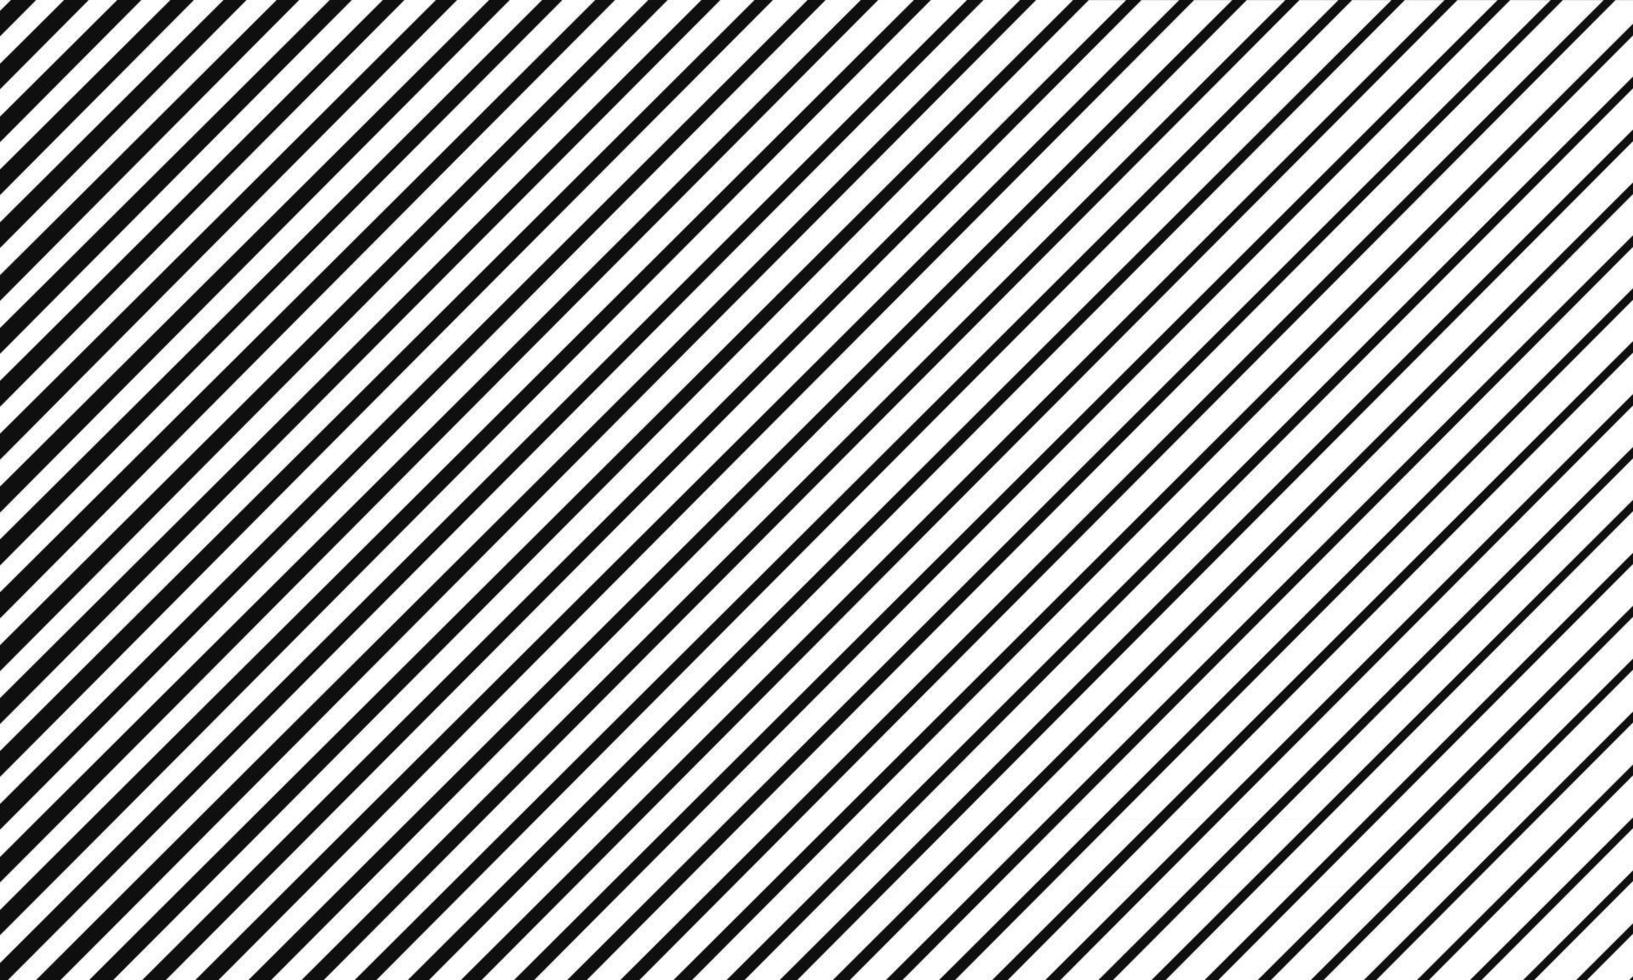 fundo padrão de linhas retas diagonais abstratas vetor